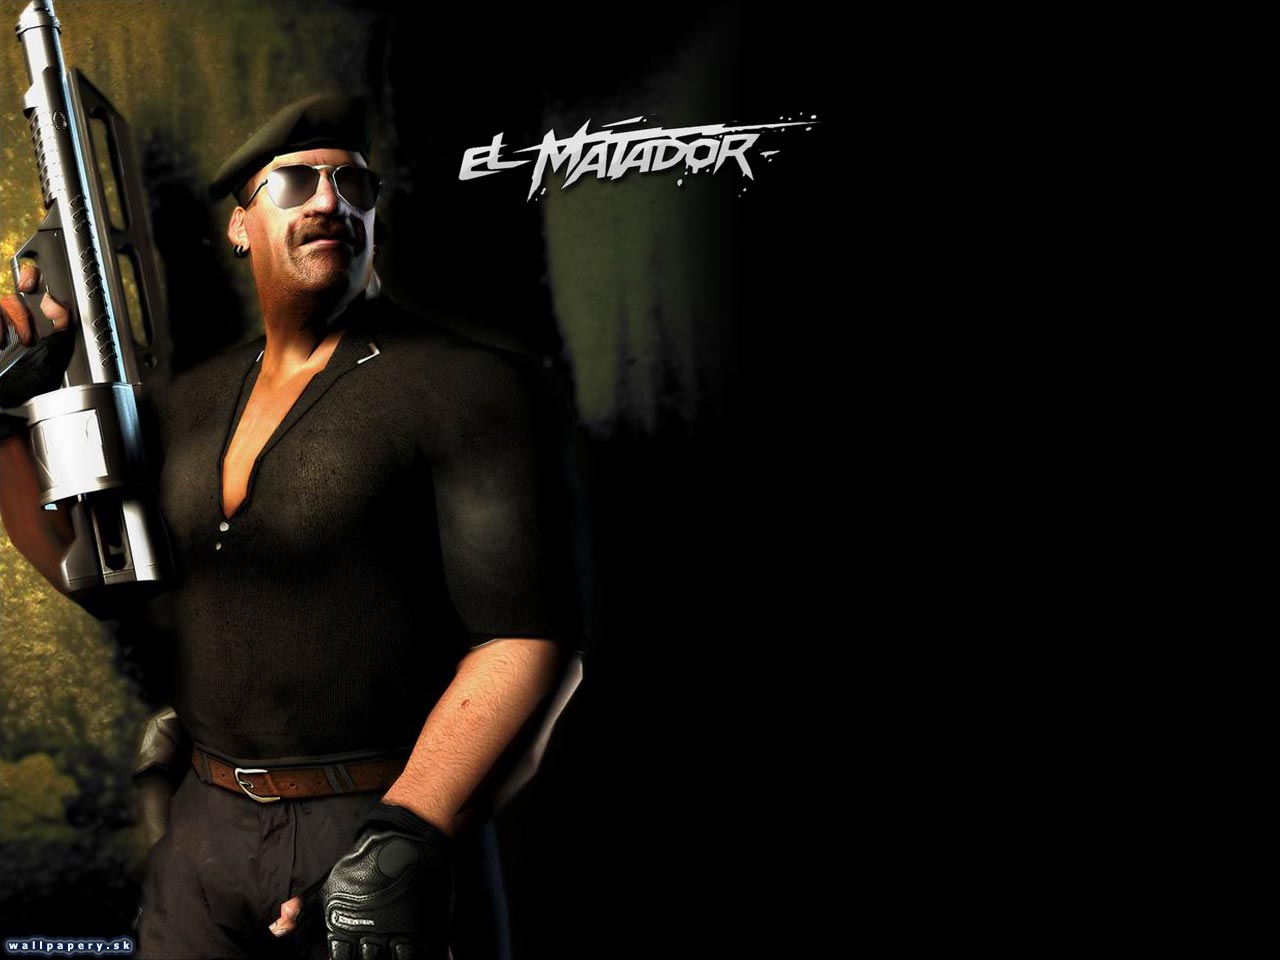 El Matador - wallpaper 1